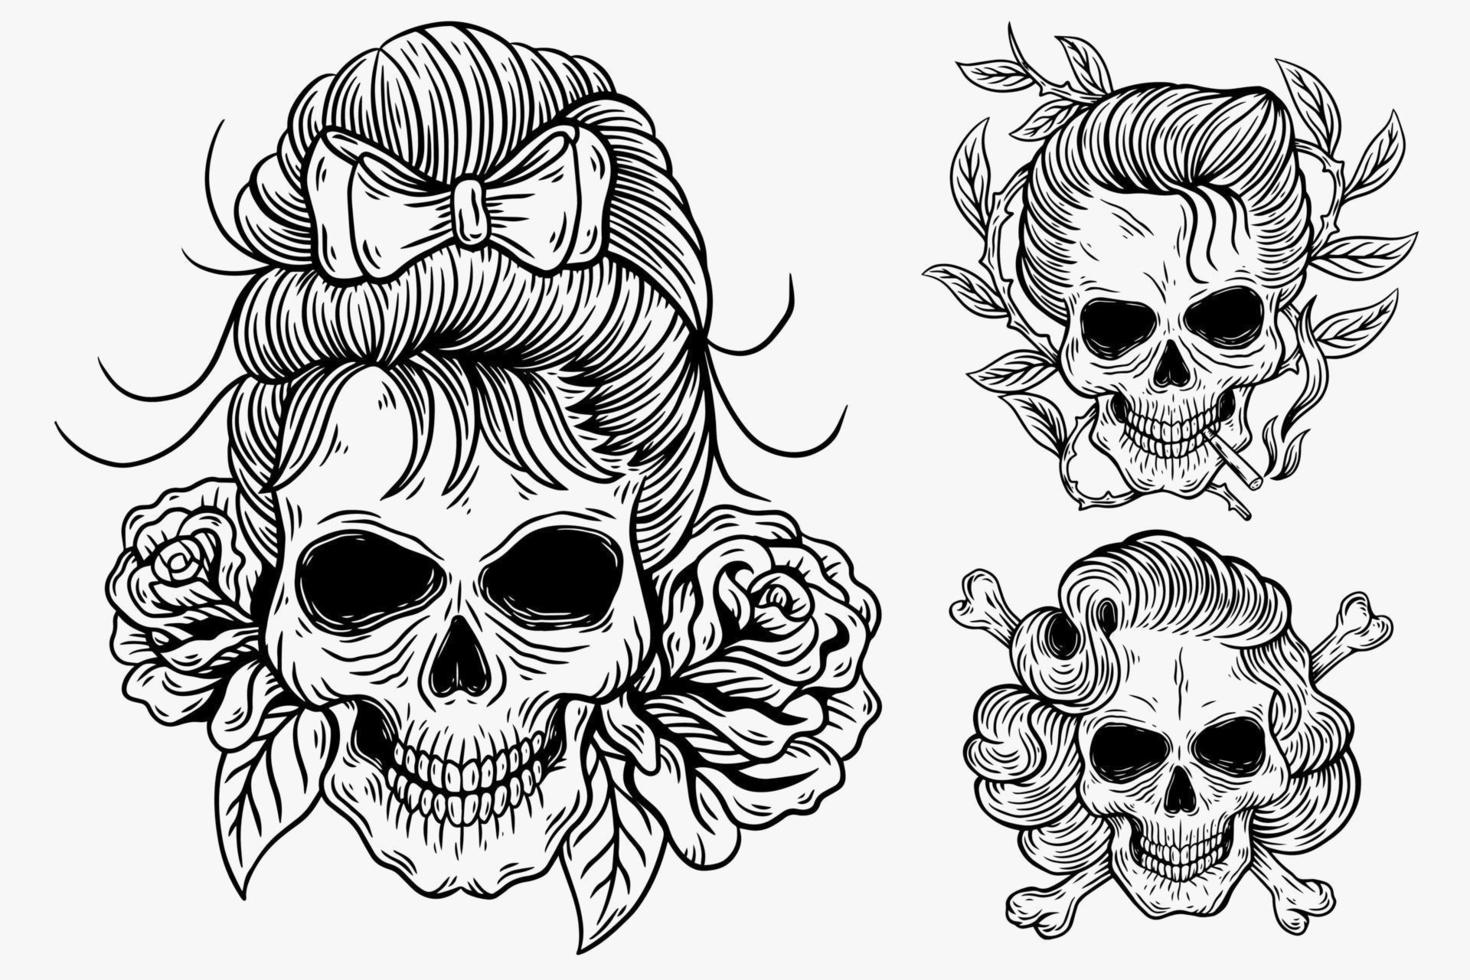 establecer ilustración oscura cráneo cabeza huesos dibujado a mano eclosión estilo de contorno para tatuaje mercancía camiseta merch vintage vector